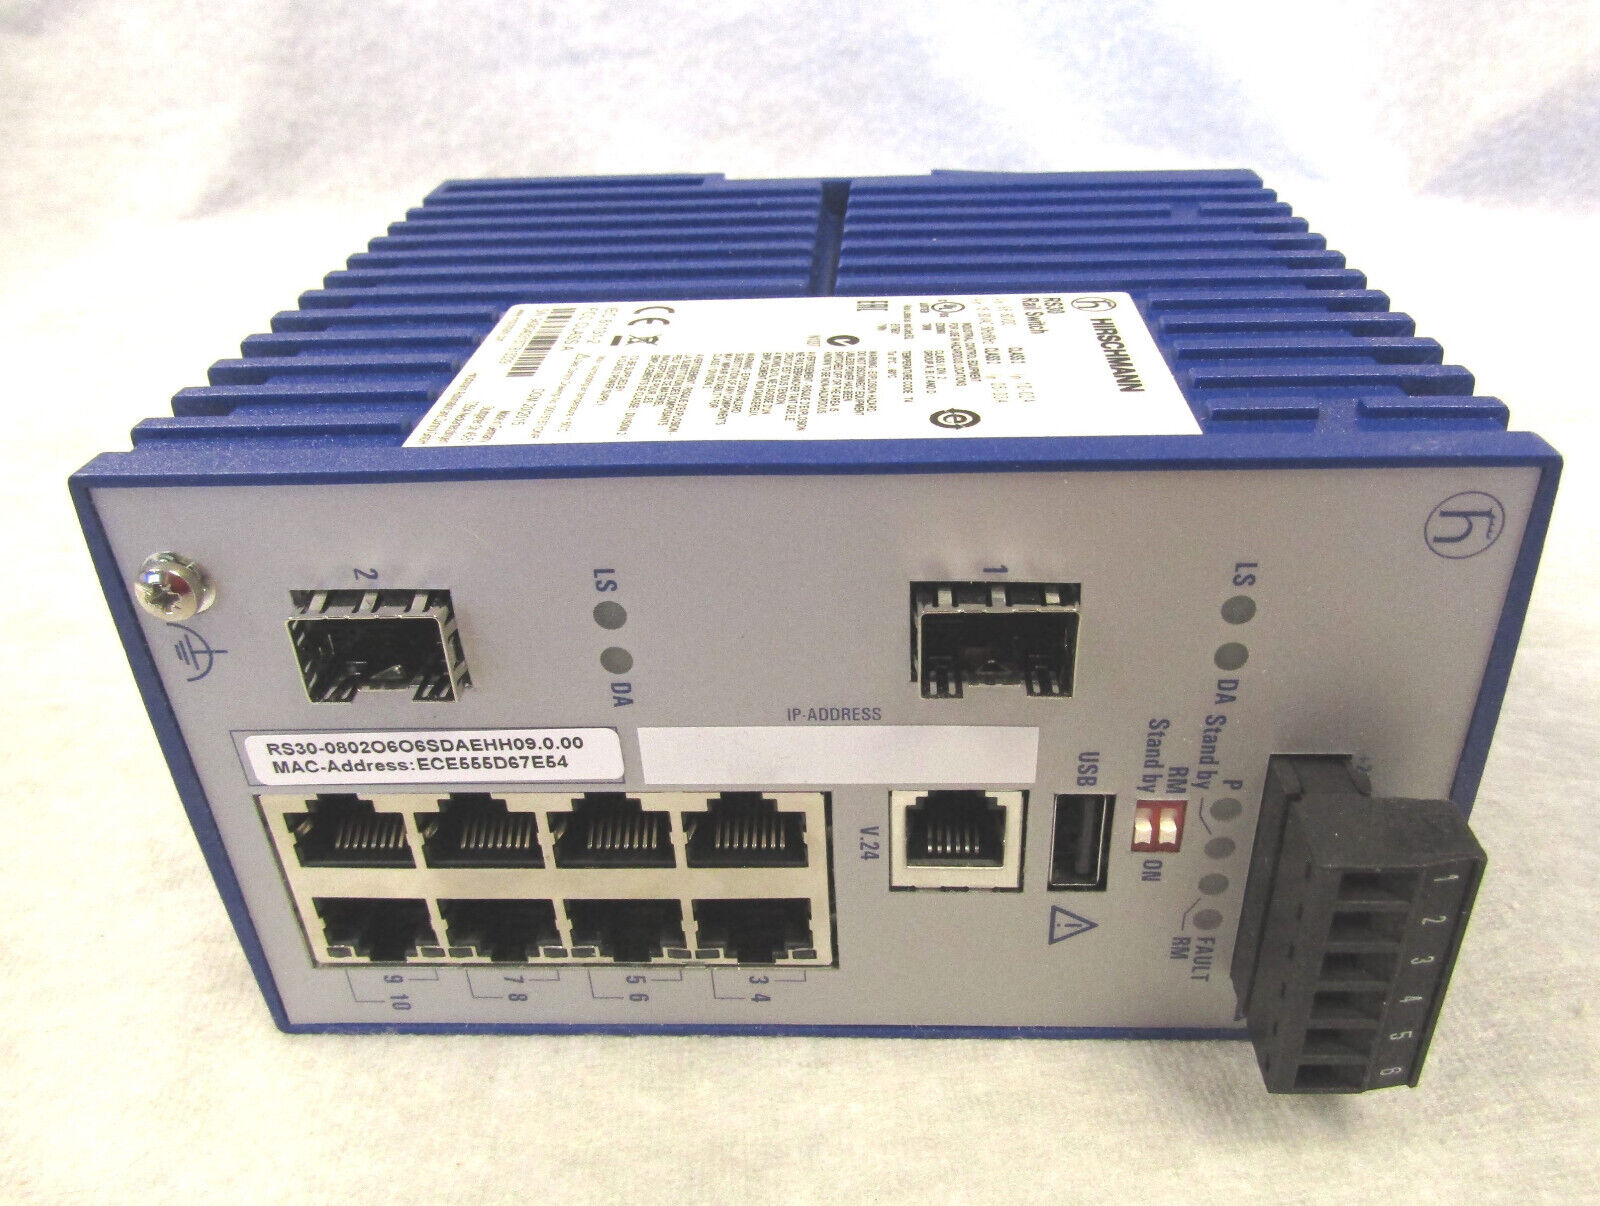 Hirschmann RS30-0802O6O6SDAEHH09.0.00 Ethernet Switch